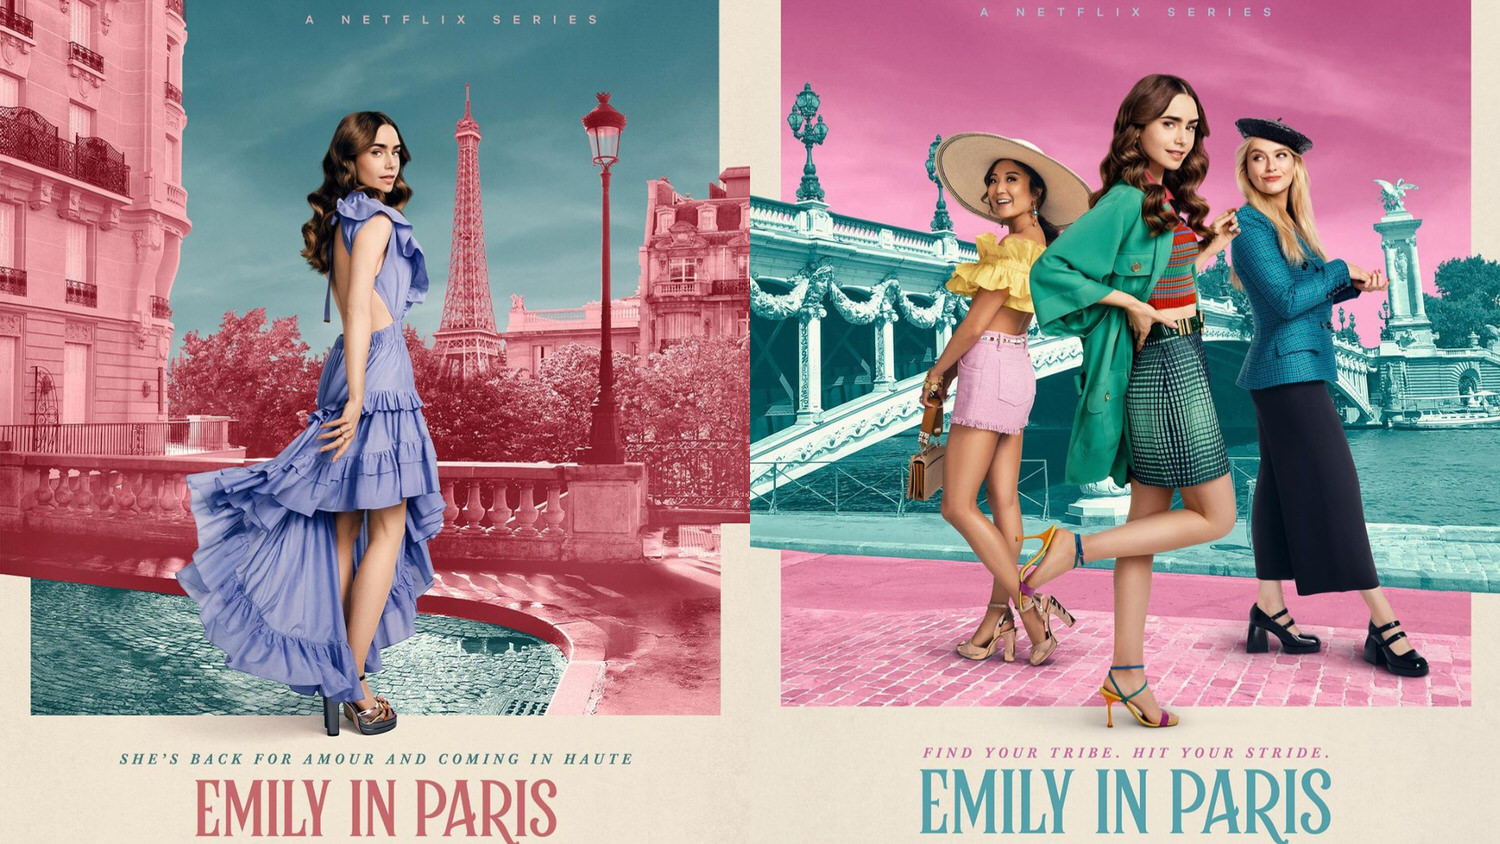 Netflix《艾蜜莉在巴黎2》第二季 莉莉·柯林斯(艾蜜莉)、菲莉普帕妮·萊蘿伊-柏莉烏(希維爾)、艾希莉·朴(敏迪)、盧卡斯·巴禾(加百列)、卡蜜兒·塞拉萊(卡蜜兒) 艾菲